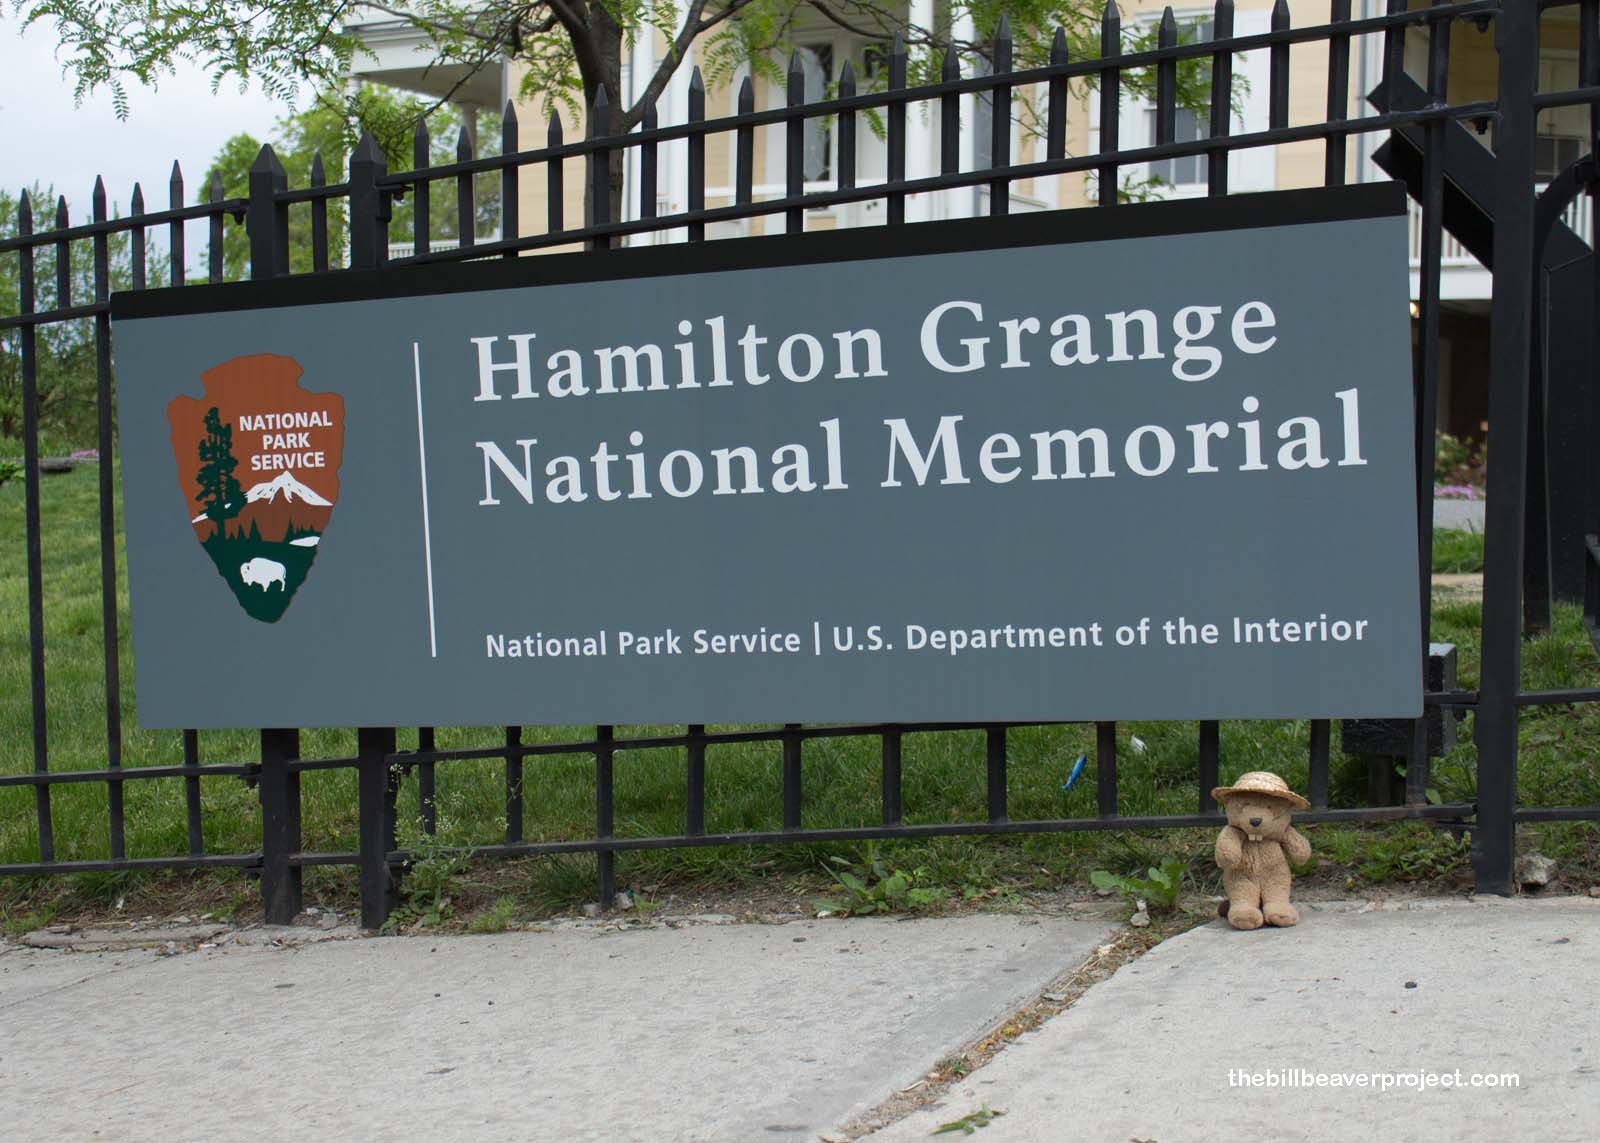 Hamilton Grange National Memorial